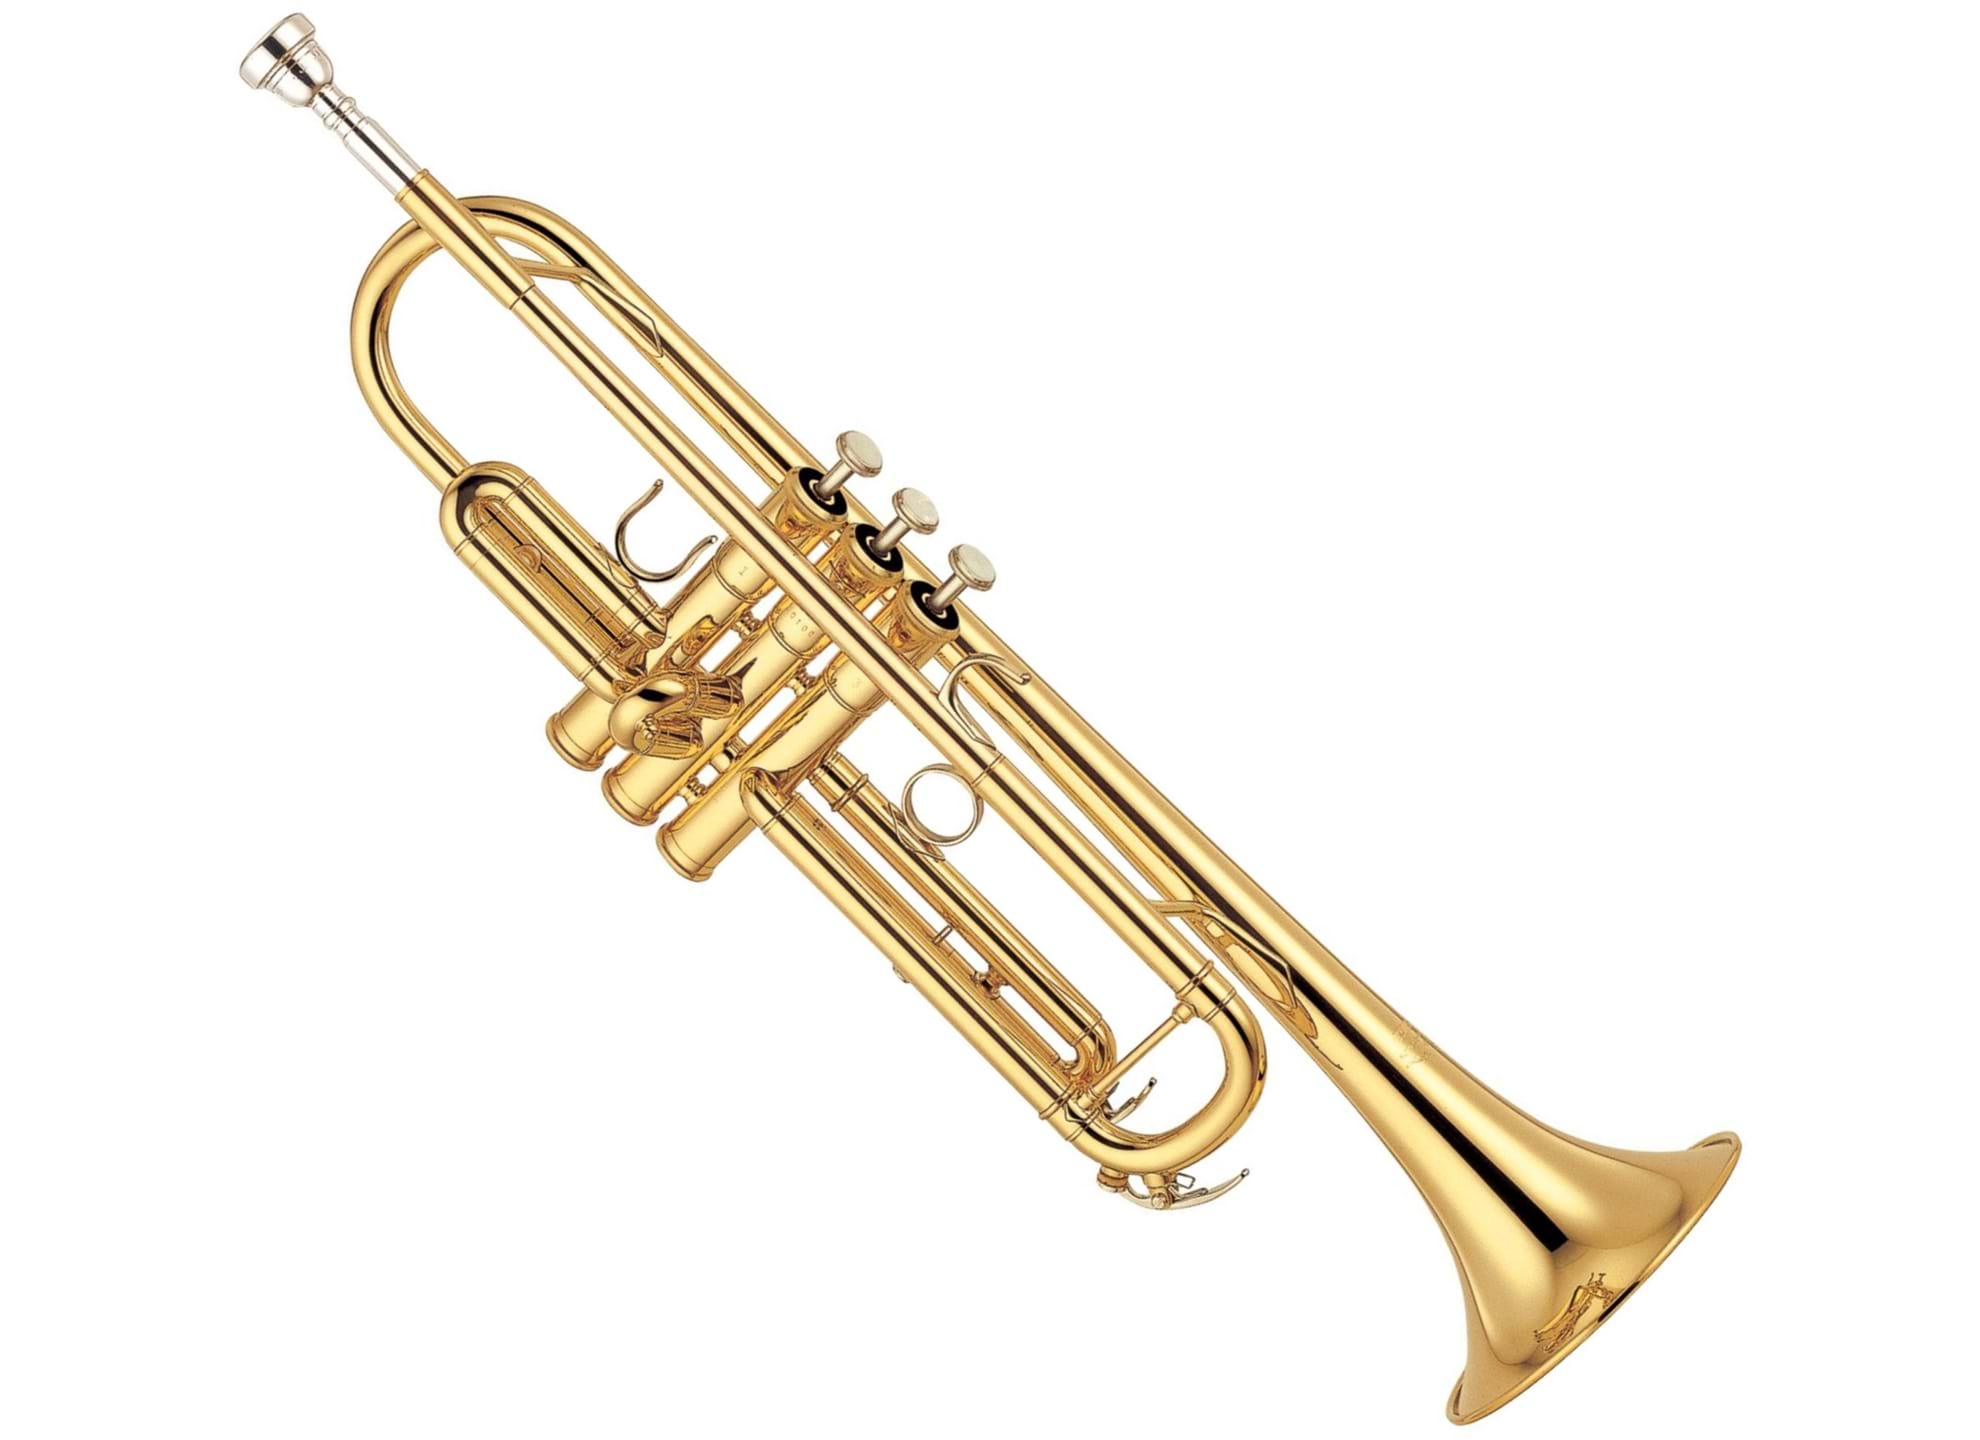 YTR-6335 Trumpet